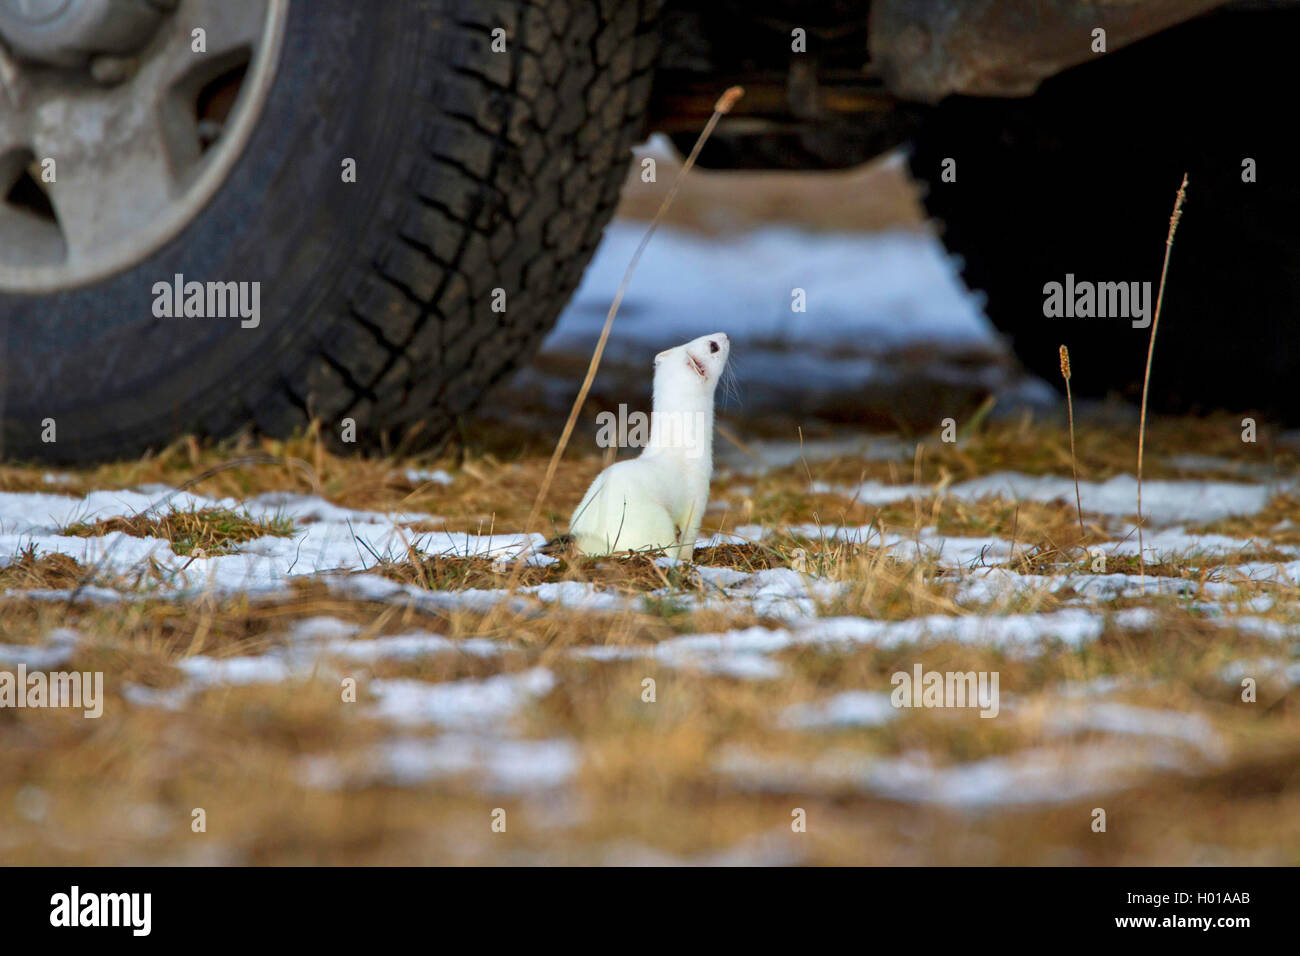 Ermellino, ermellino, corto-tailed donnola (Mustela erminea), guardando sotto un auto in inverno, vista laterale, Germania Foto Stock